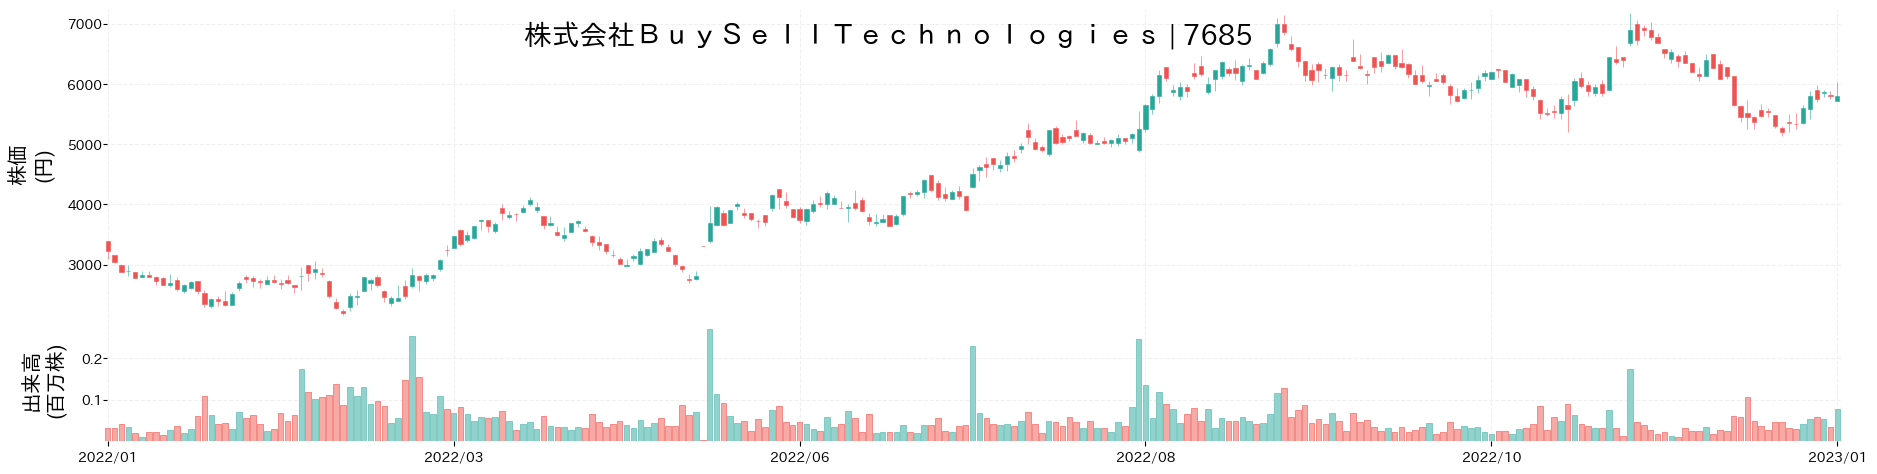 BuySellTechnologiesの株価推移(2022)